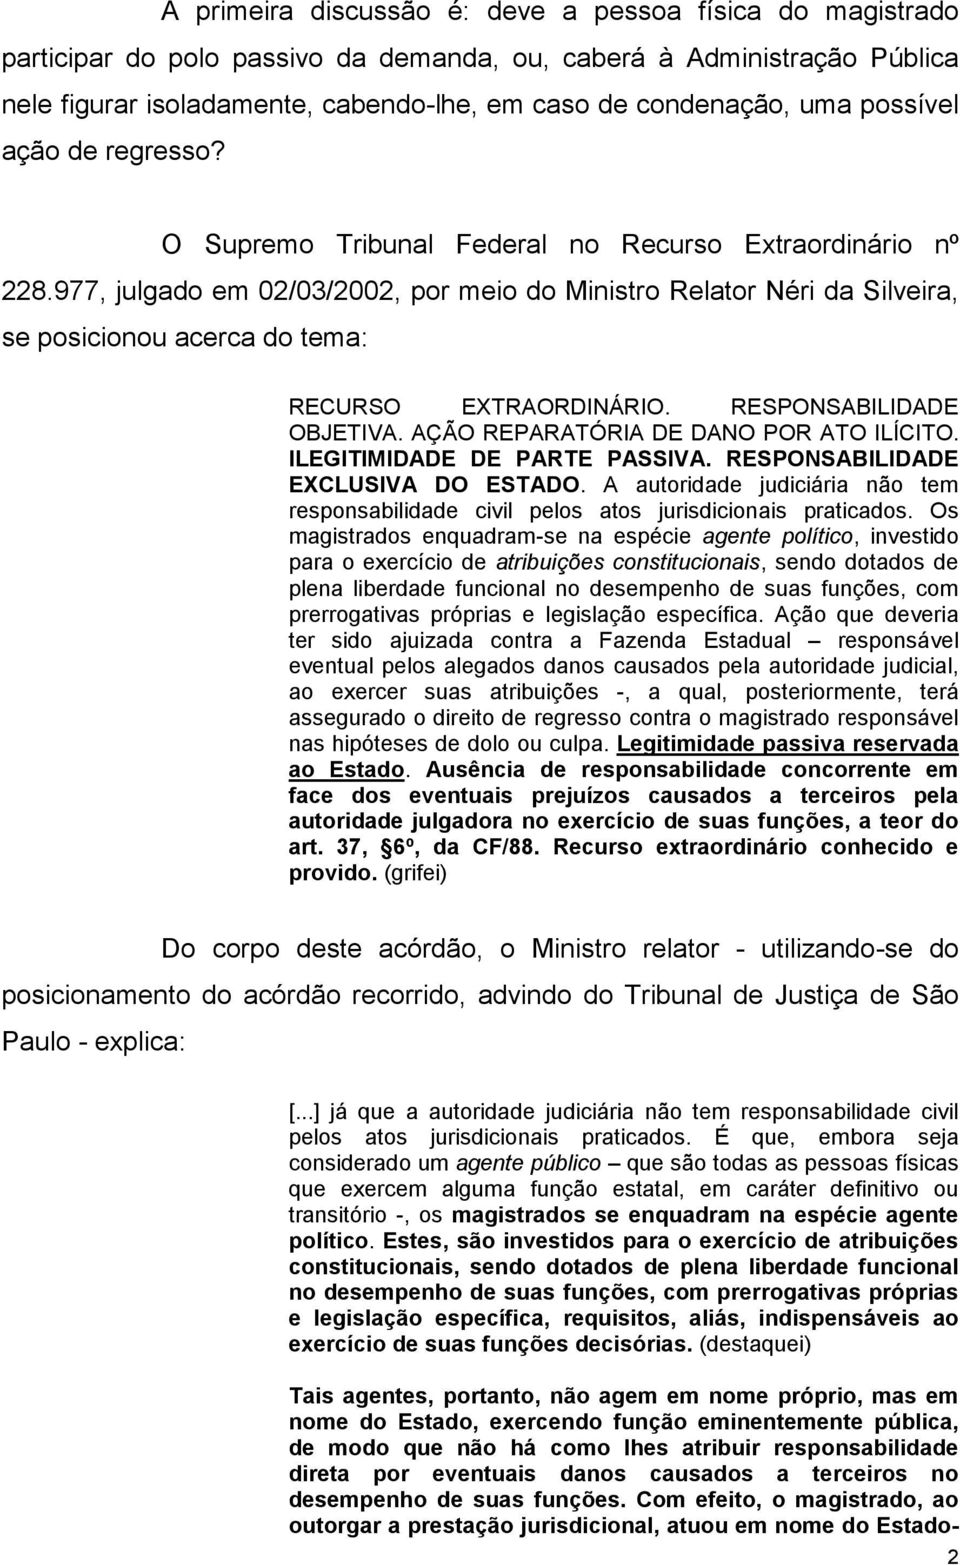 977, julgado em 02/03/2002, por meio do Ministro Relator Néri da Silveira, se posicionou acerca do tema: RECURSO EXTRAORDINÁRIO. RESPONSABILIDADE OBJETIVA. AÇÃO REPARATÓRIA DE DANO POR ATO ILÍCITO.